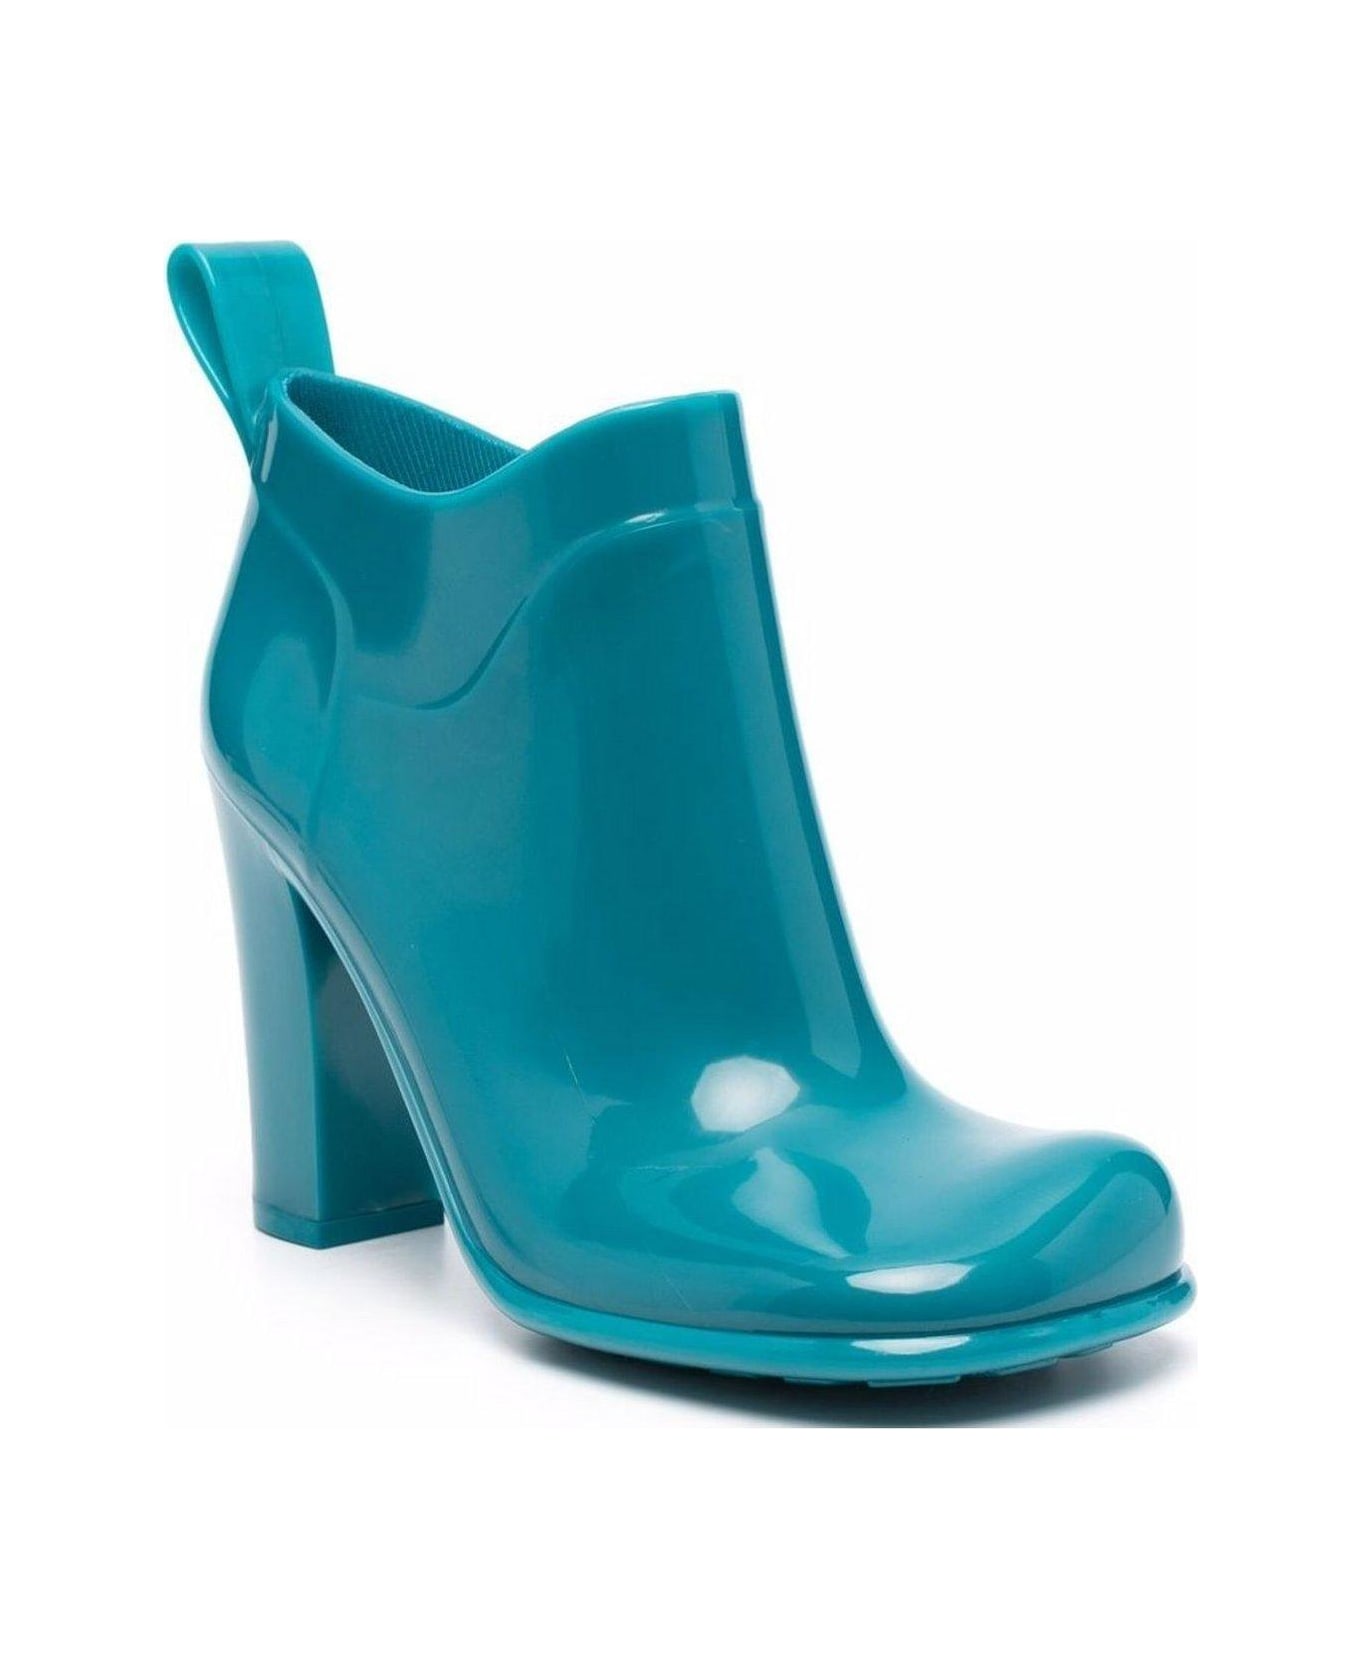 Bottega Veneta Shine Square Toe Ankle Boots - BLUE